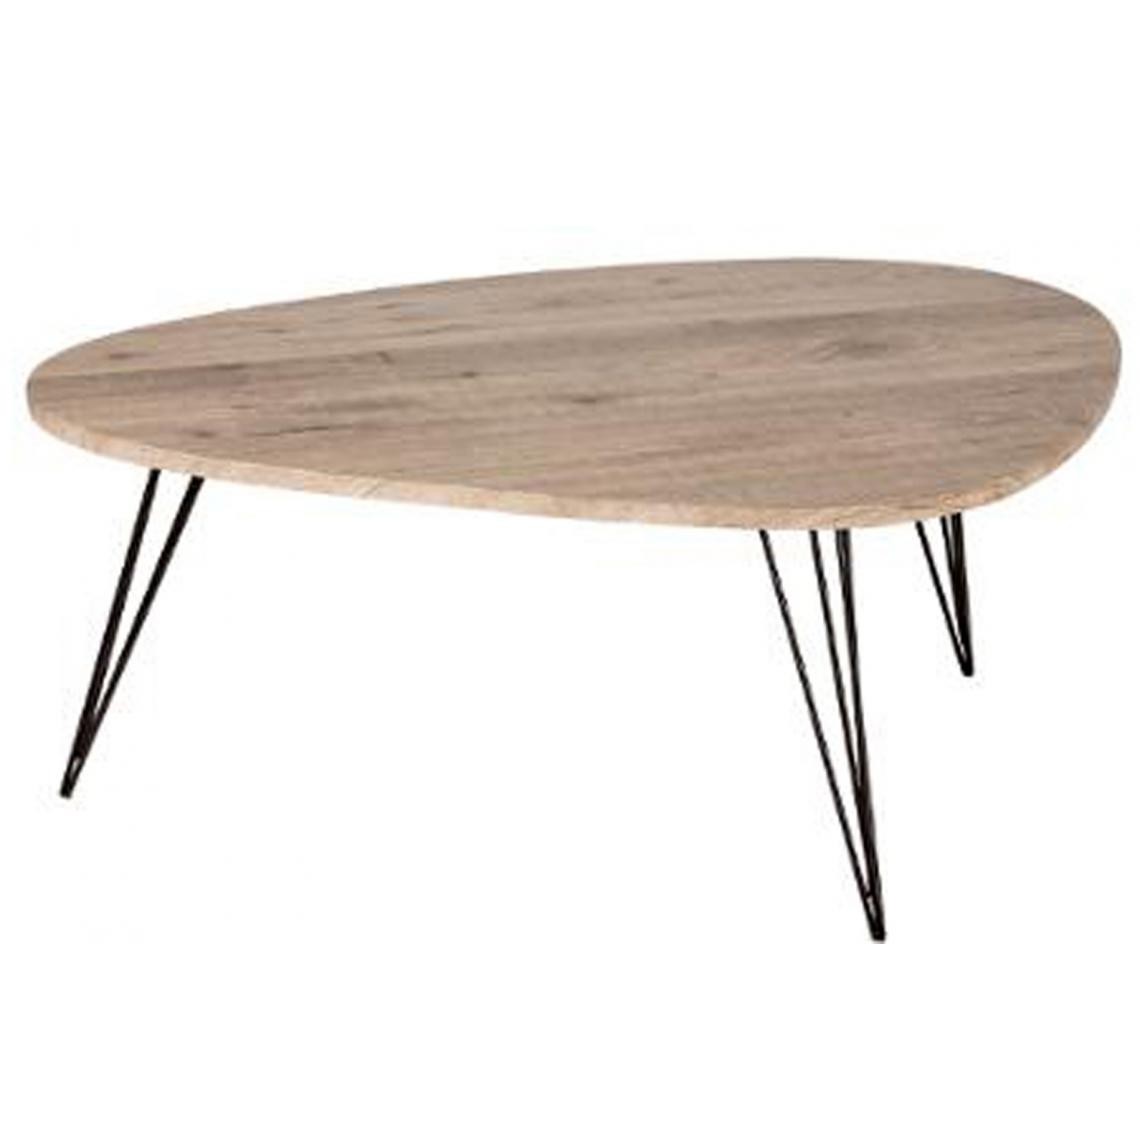 Pegane - Table basse simple en MDF, PVC et fer coloris marron - Dim : L 112 x l 80 x H 40 cm - Tables basses